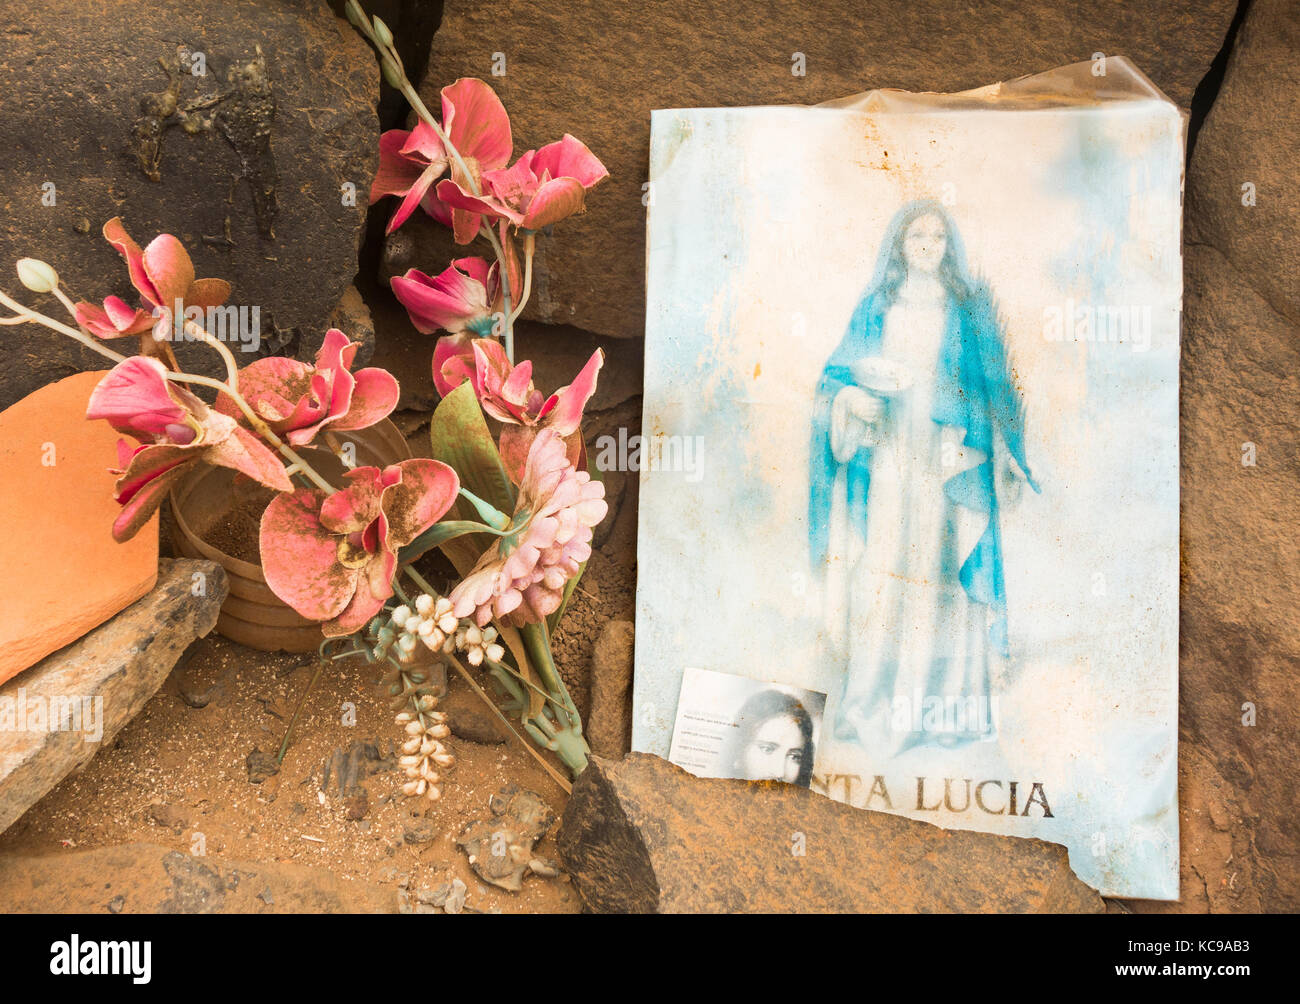 Immagine di santa lucia, patrono dei non vedenti come pure gli autori, contadini..., sulla spiaggia in Spagna Foto Stock